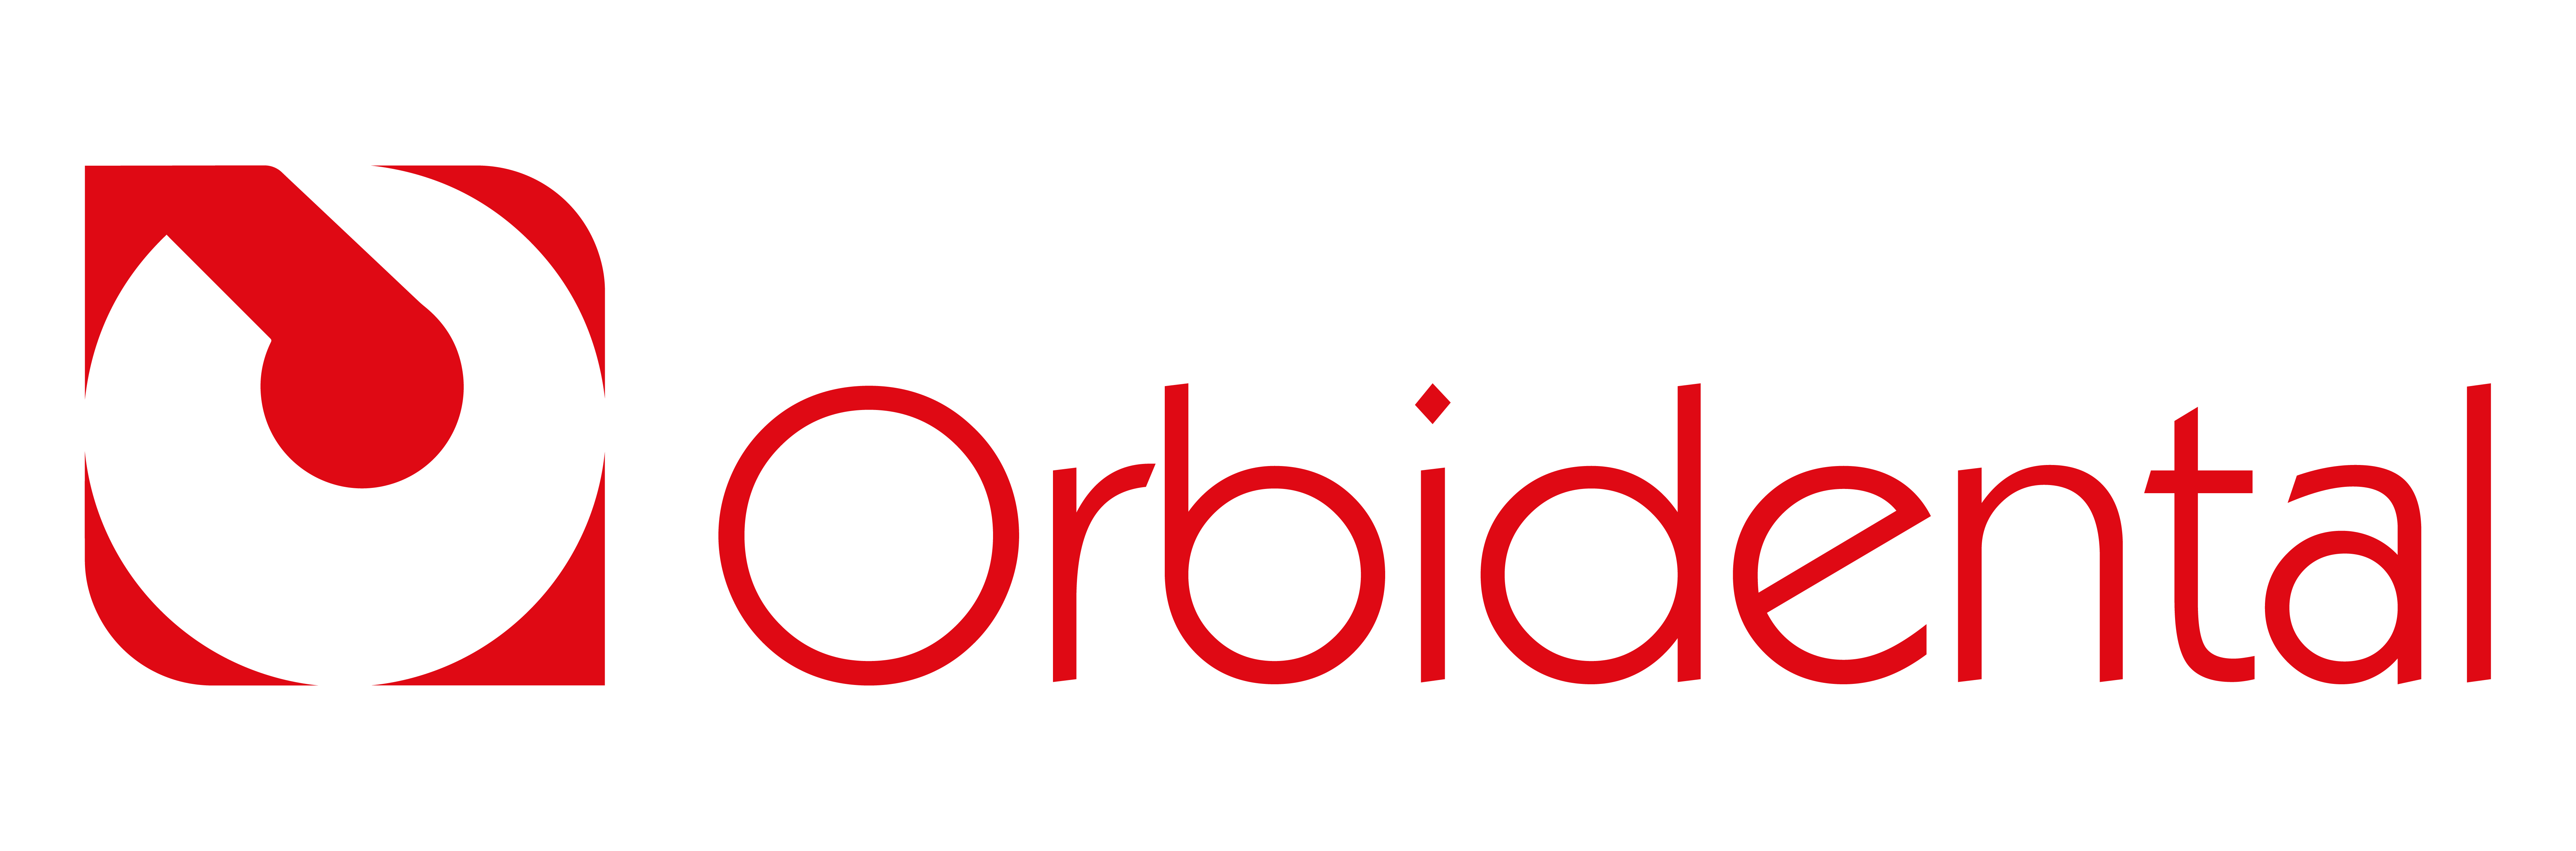 Logotipo Orbidental Rojo